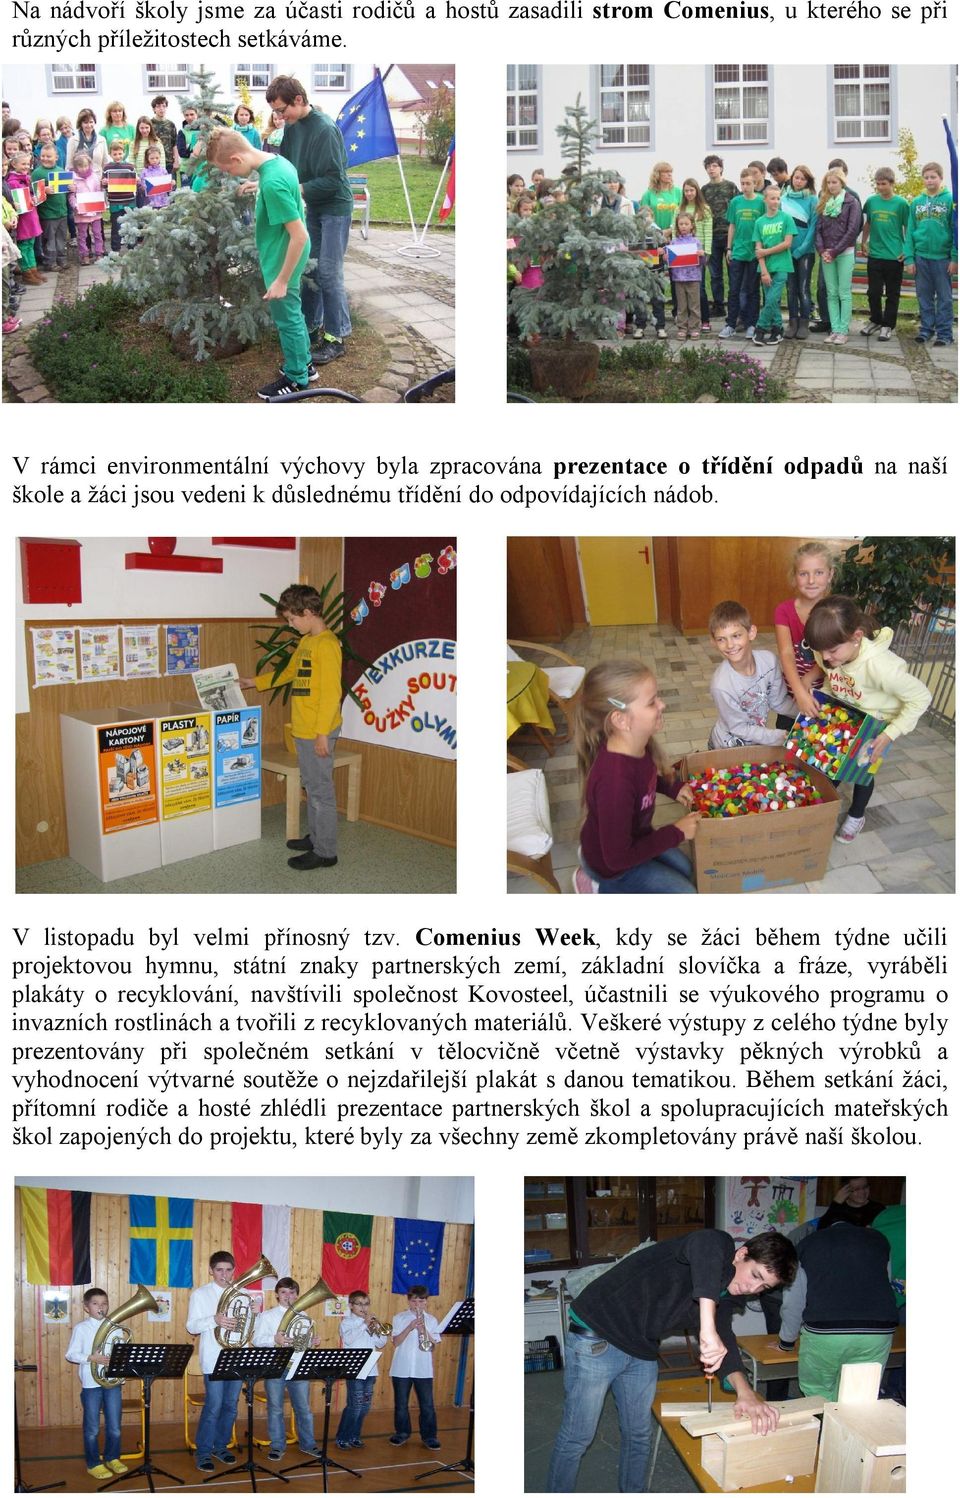 Comenius Week, kdy se žáci během týdne učili projektovou hymnu, státní znaky partnerských zemí, základní slovíčka a fráze, vyráběli plakáty o recyklování, navštívili společnost Kovosteel, účastnili